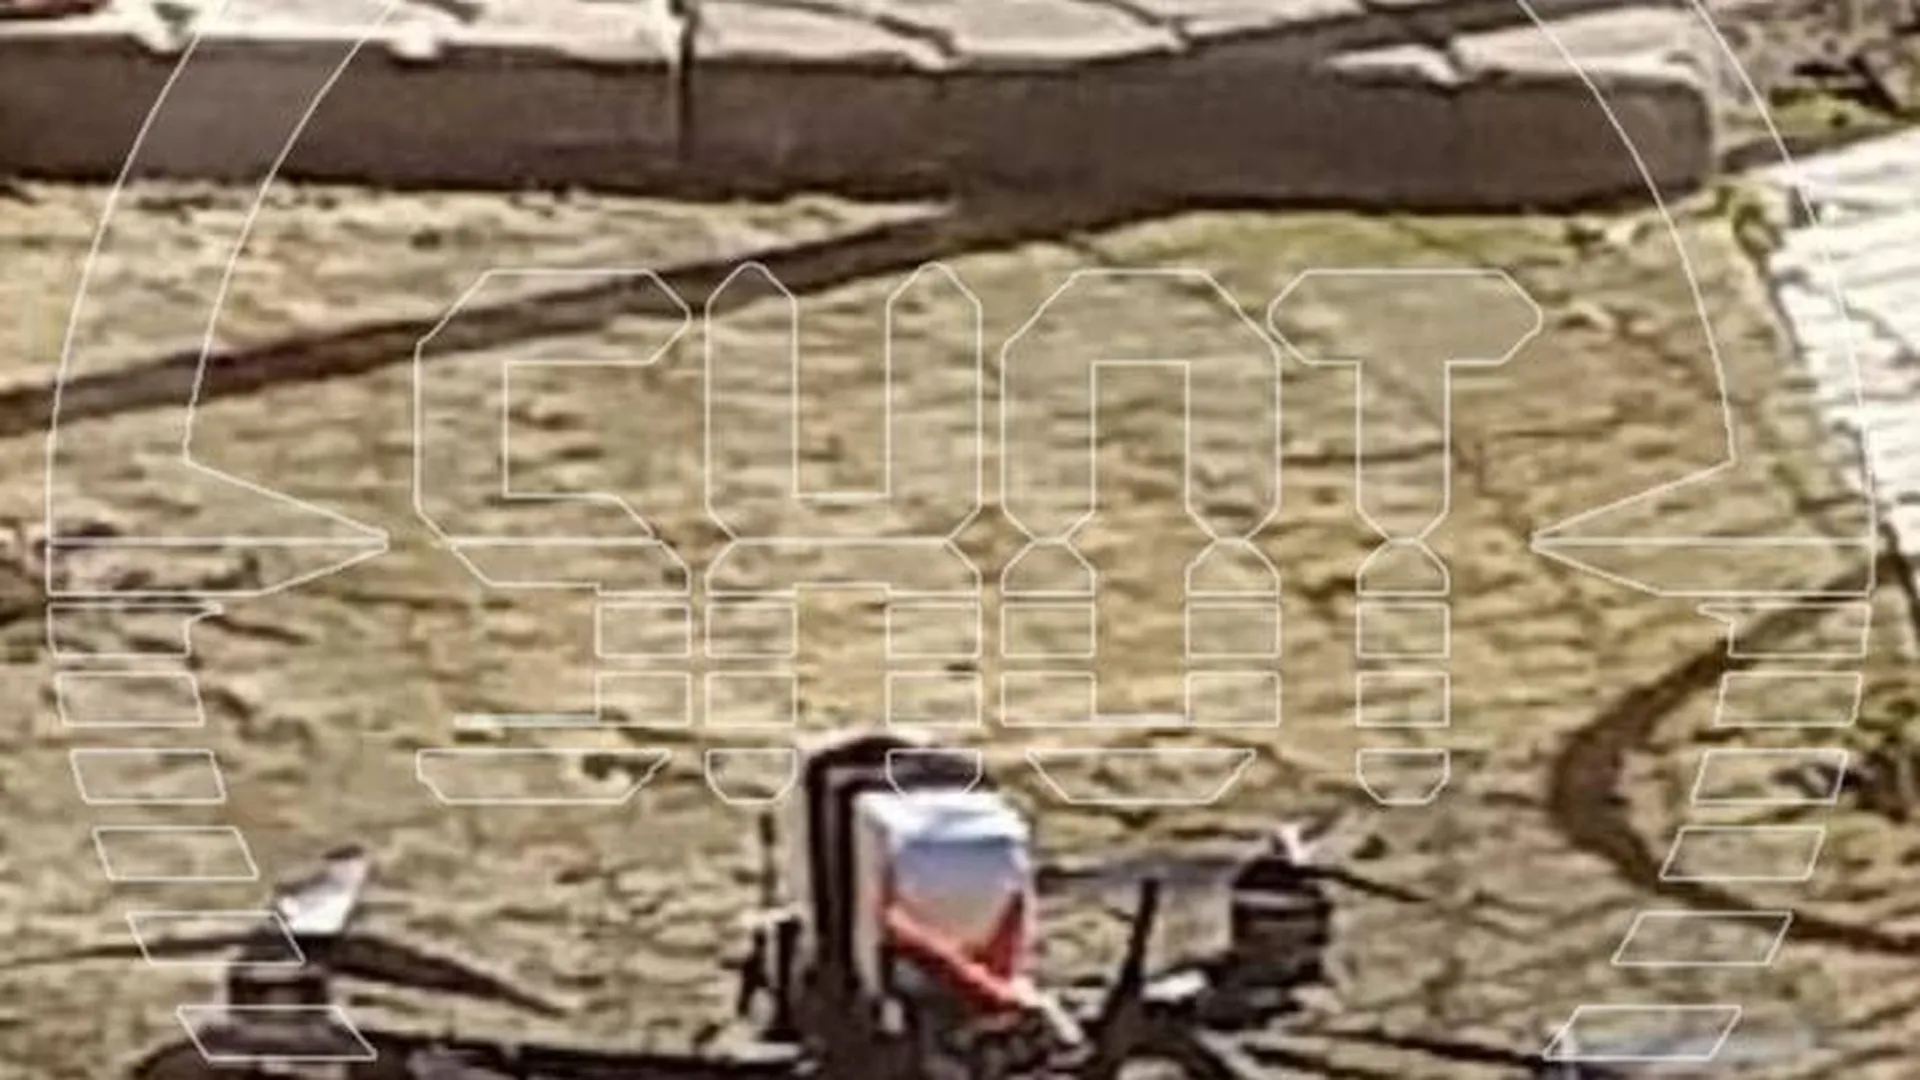 SHOT: дрон с примотанной коробкой обнаружен на участке в Раменском